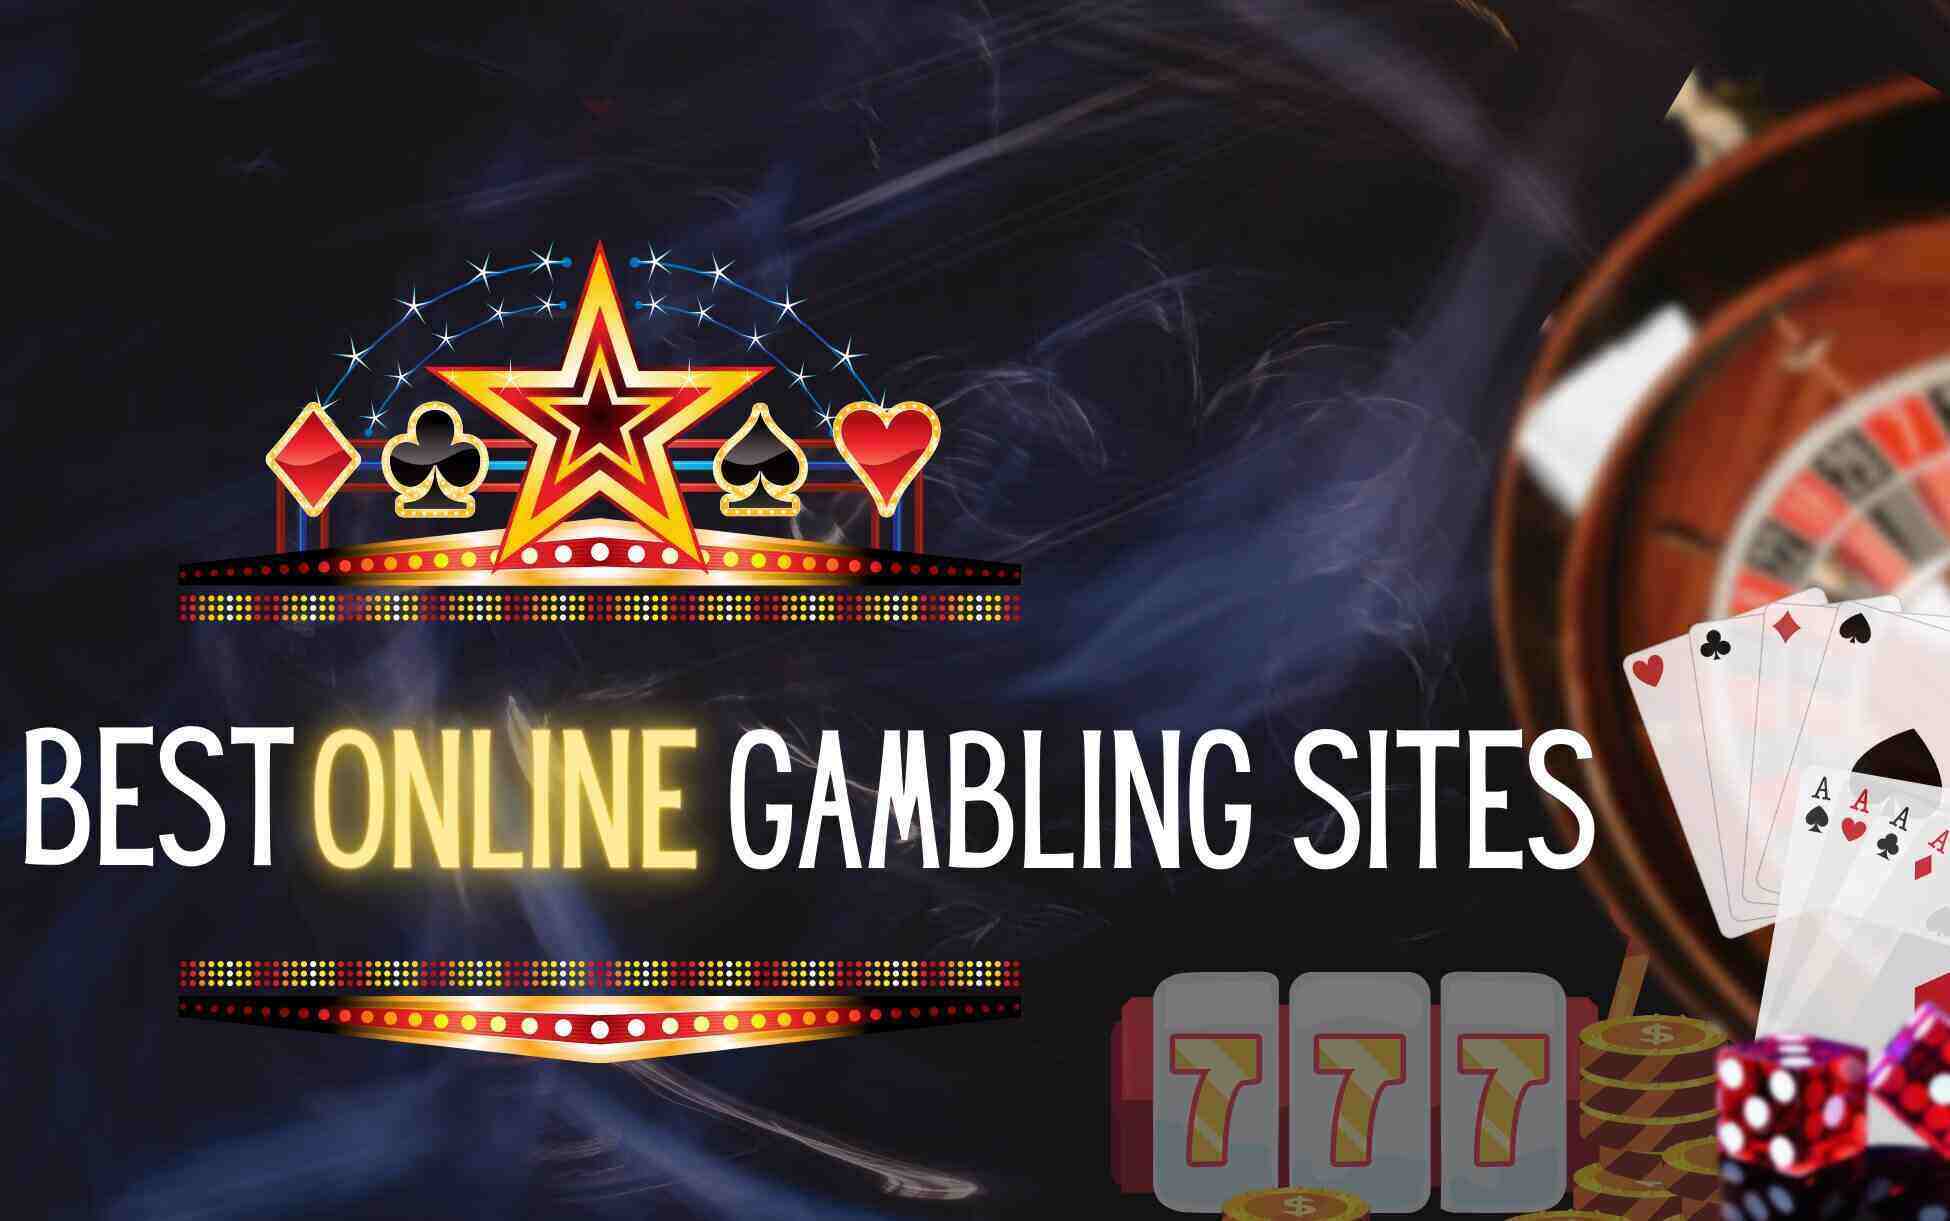 spiele Casino cutlasswp.com: Eine unglaublich einfache Methode, die für alle funktioniert